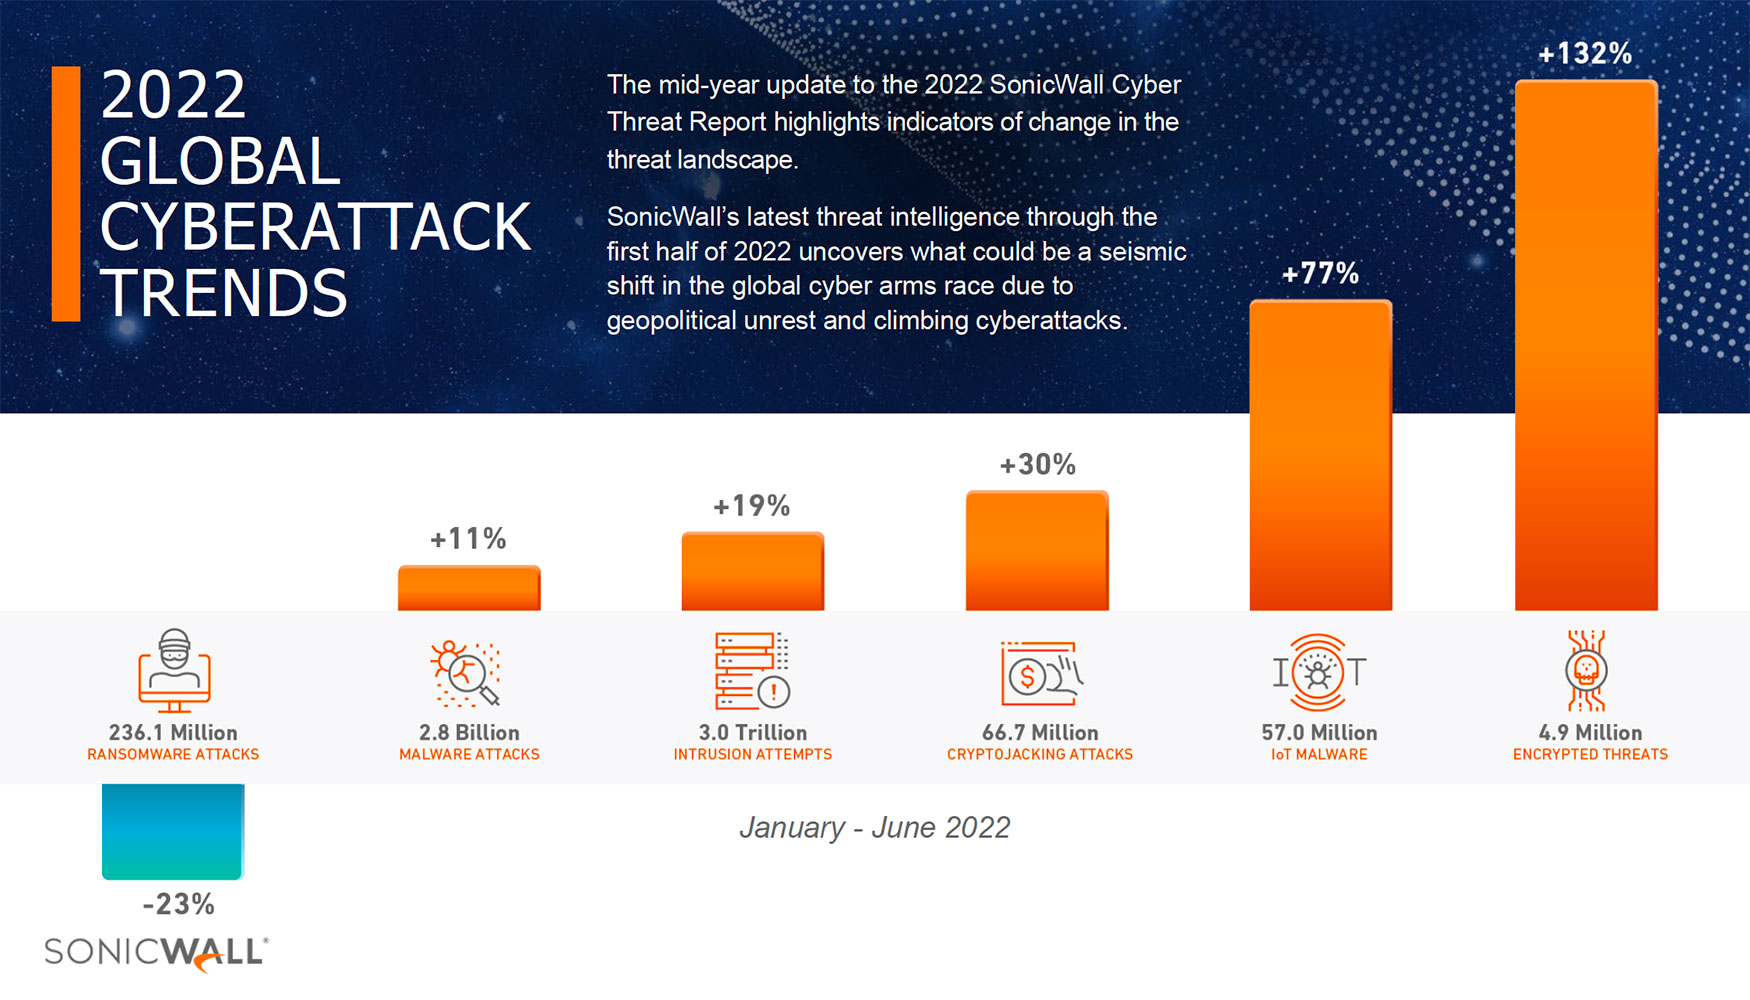 El ltimo informe semestral de SonicWall Capture Labs revela un aumento del 11% en el malware global...